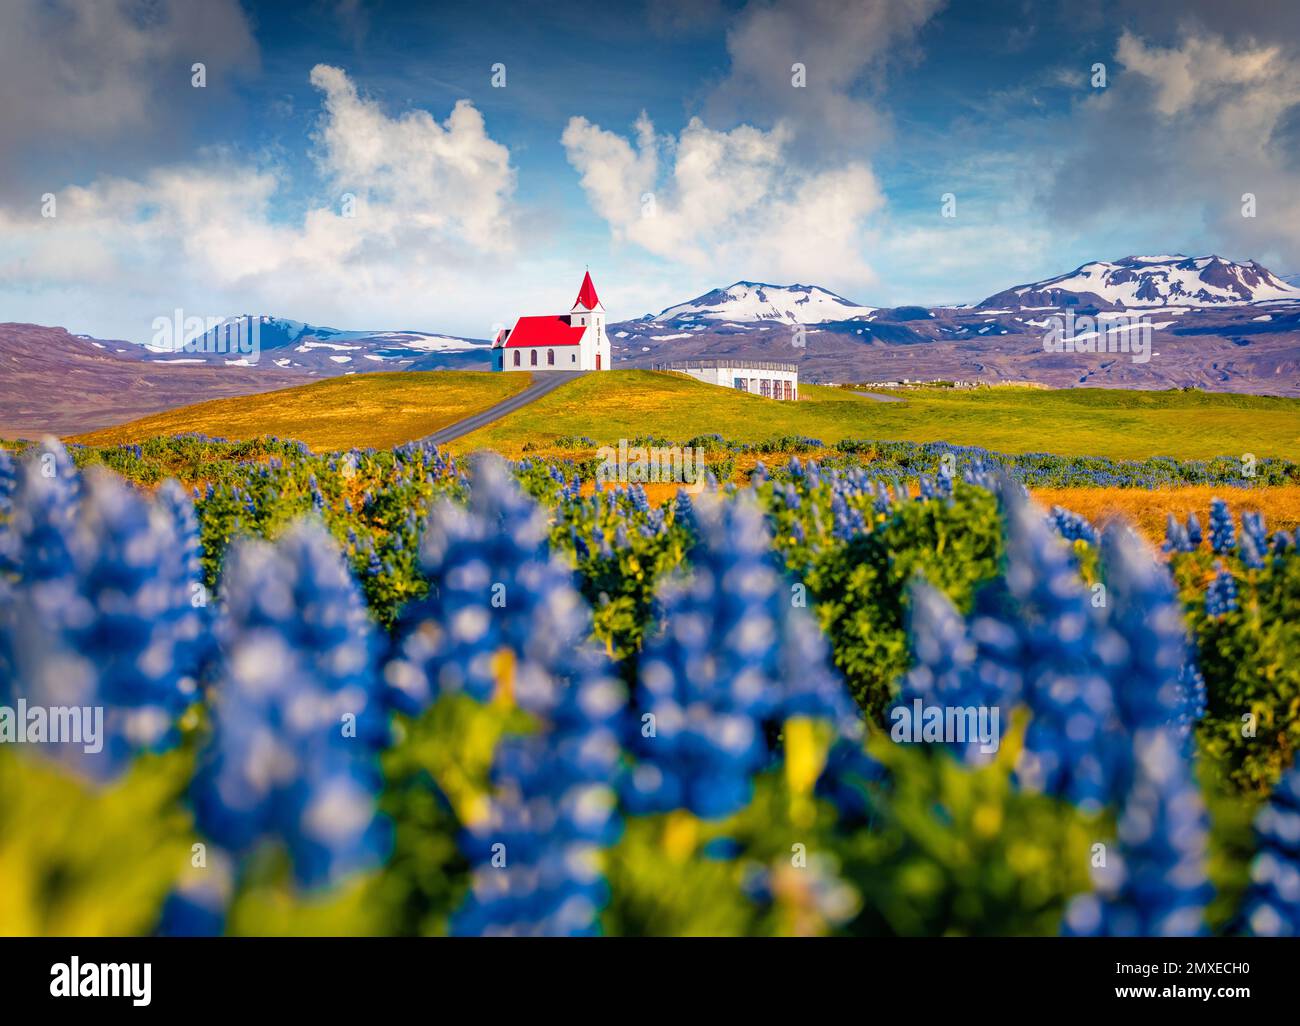 Magnifique paysage d'été. Magnifique vue du matin sur l'église emblématique - Ingjaldsholl. Incroyable scène d'été de l'Islande avec champ de lupin en fleur flux Banque D'Images